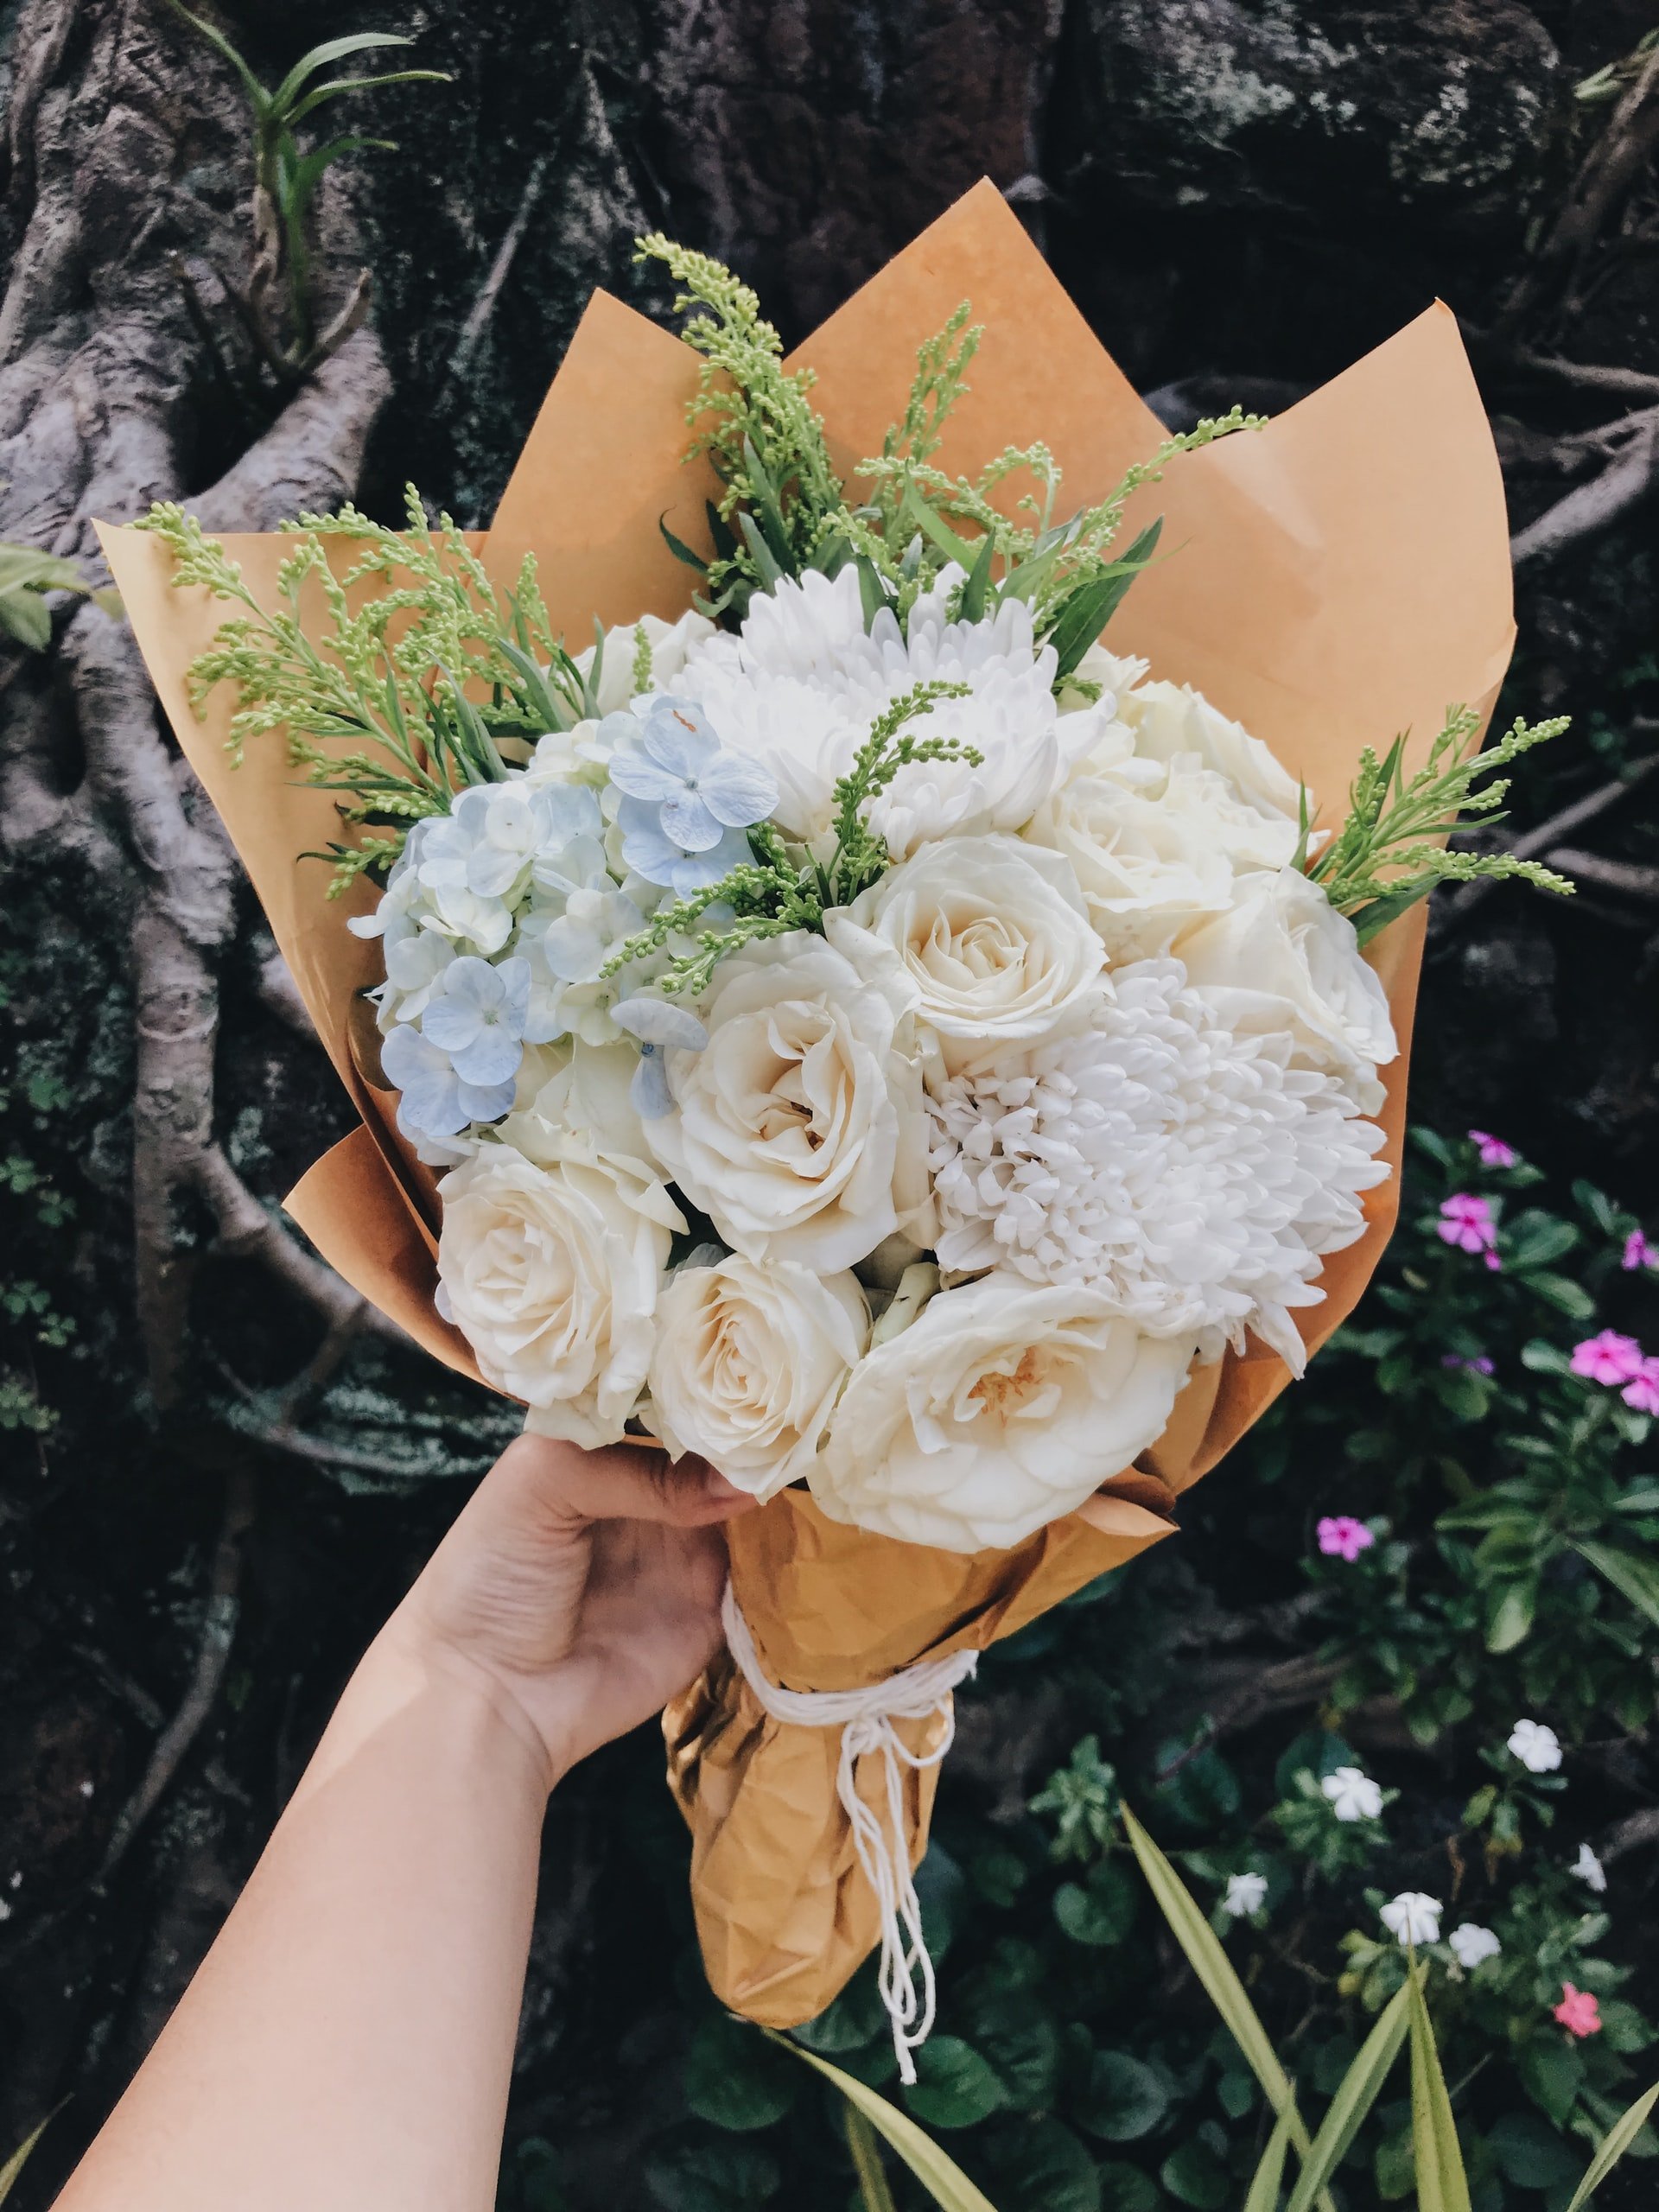 Er brachte ihr jede Woche Blumen und eine Karte. | Quelle: Unsplash